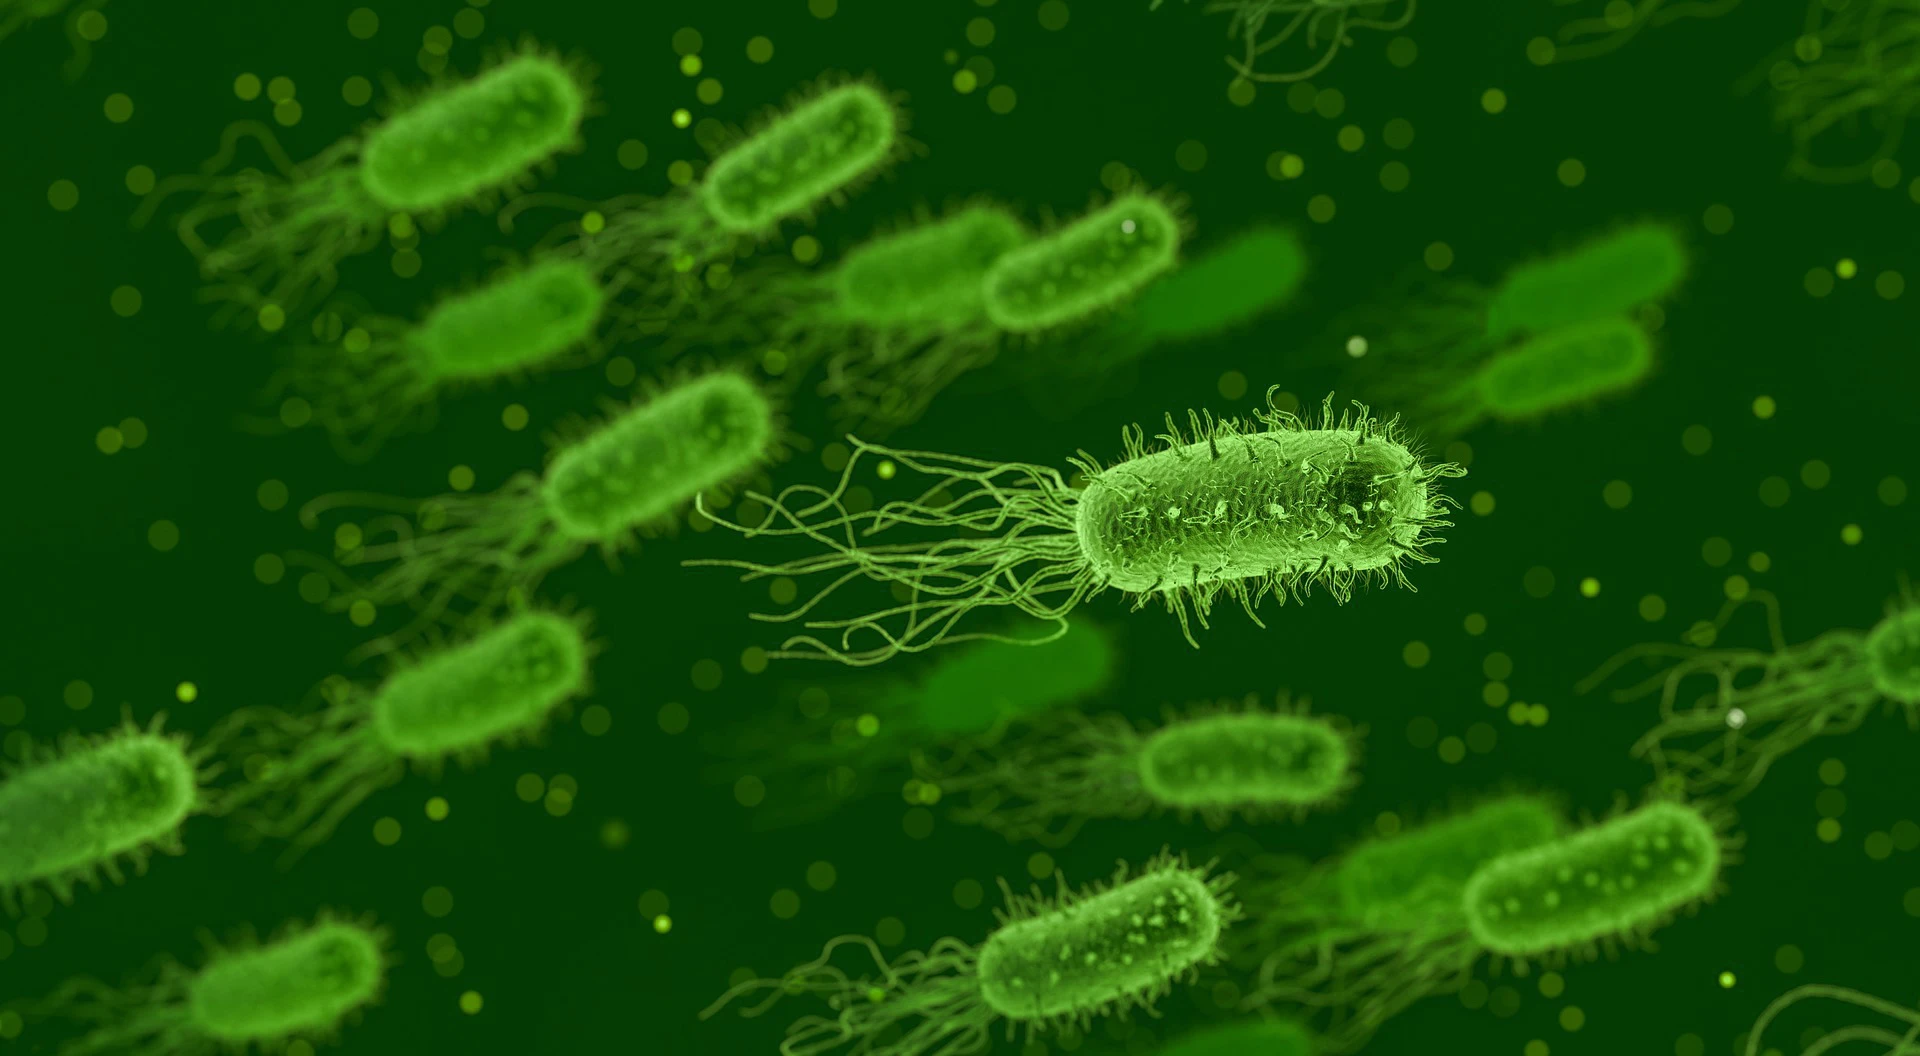 Leben mit einer intakten mikrobiellen Besiedelung